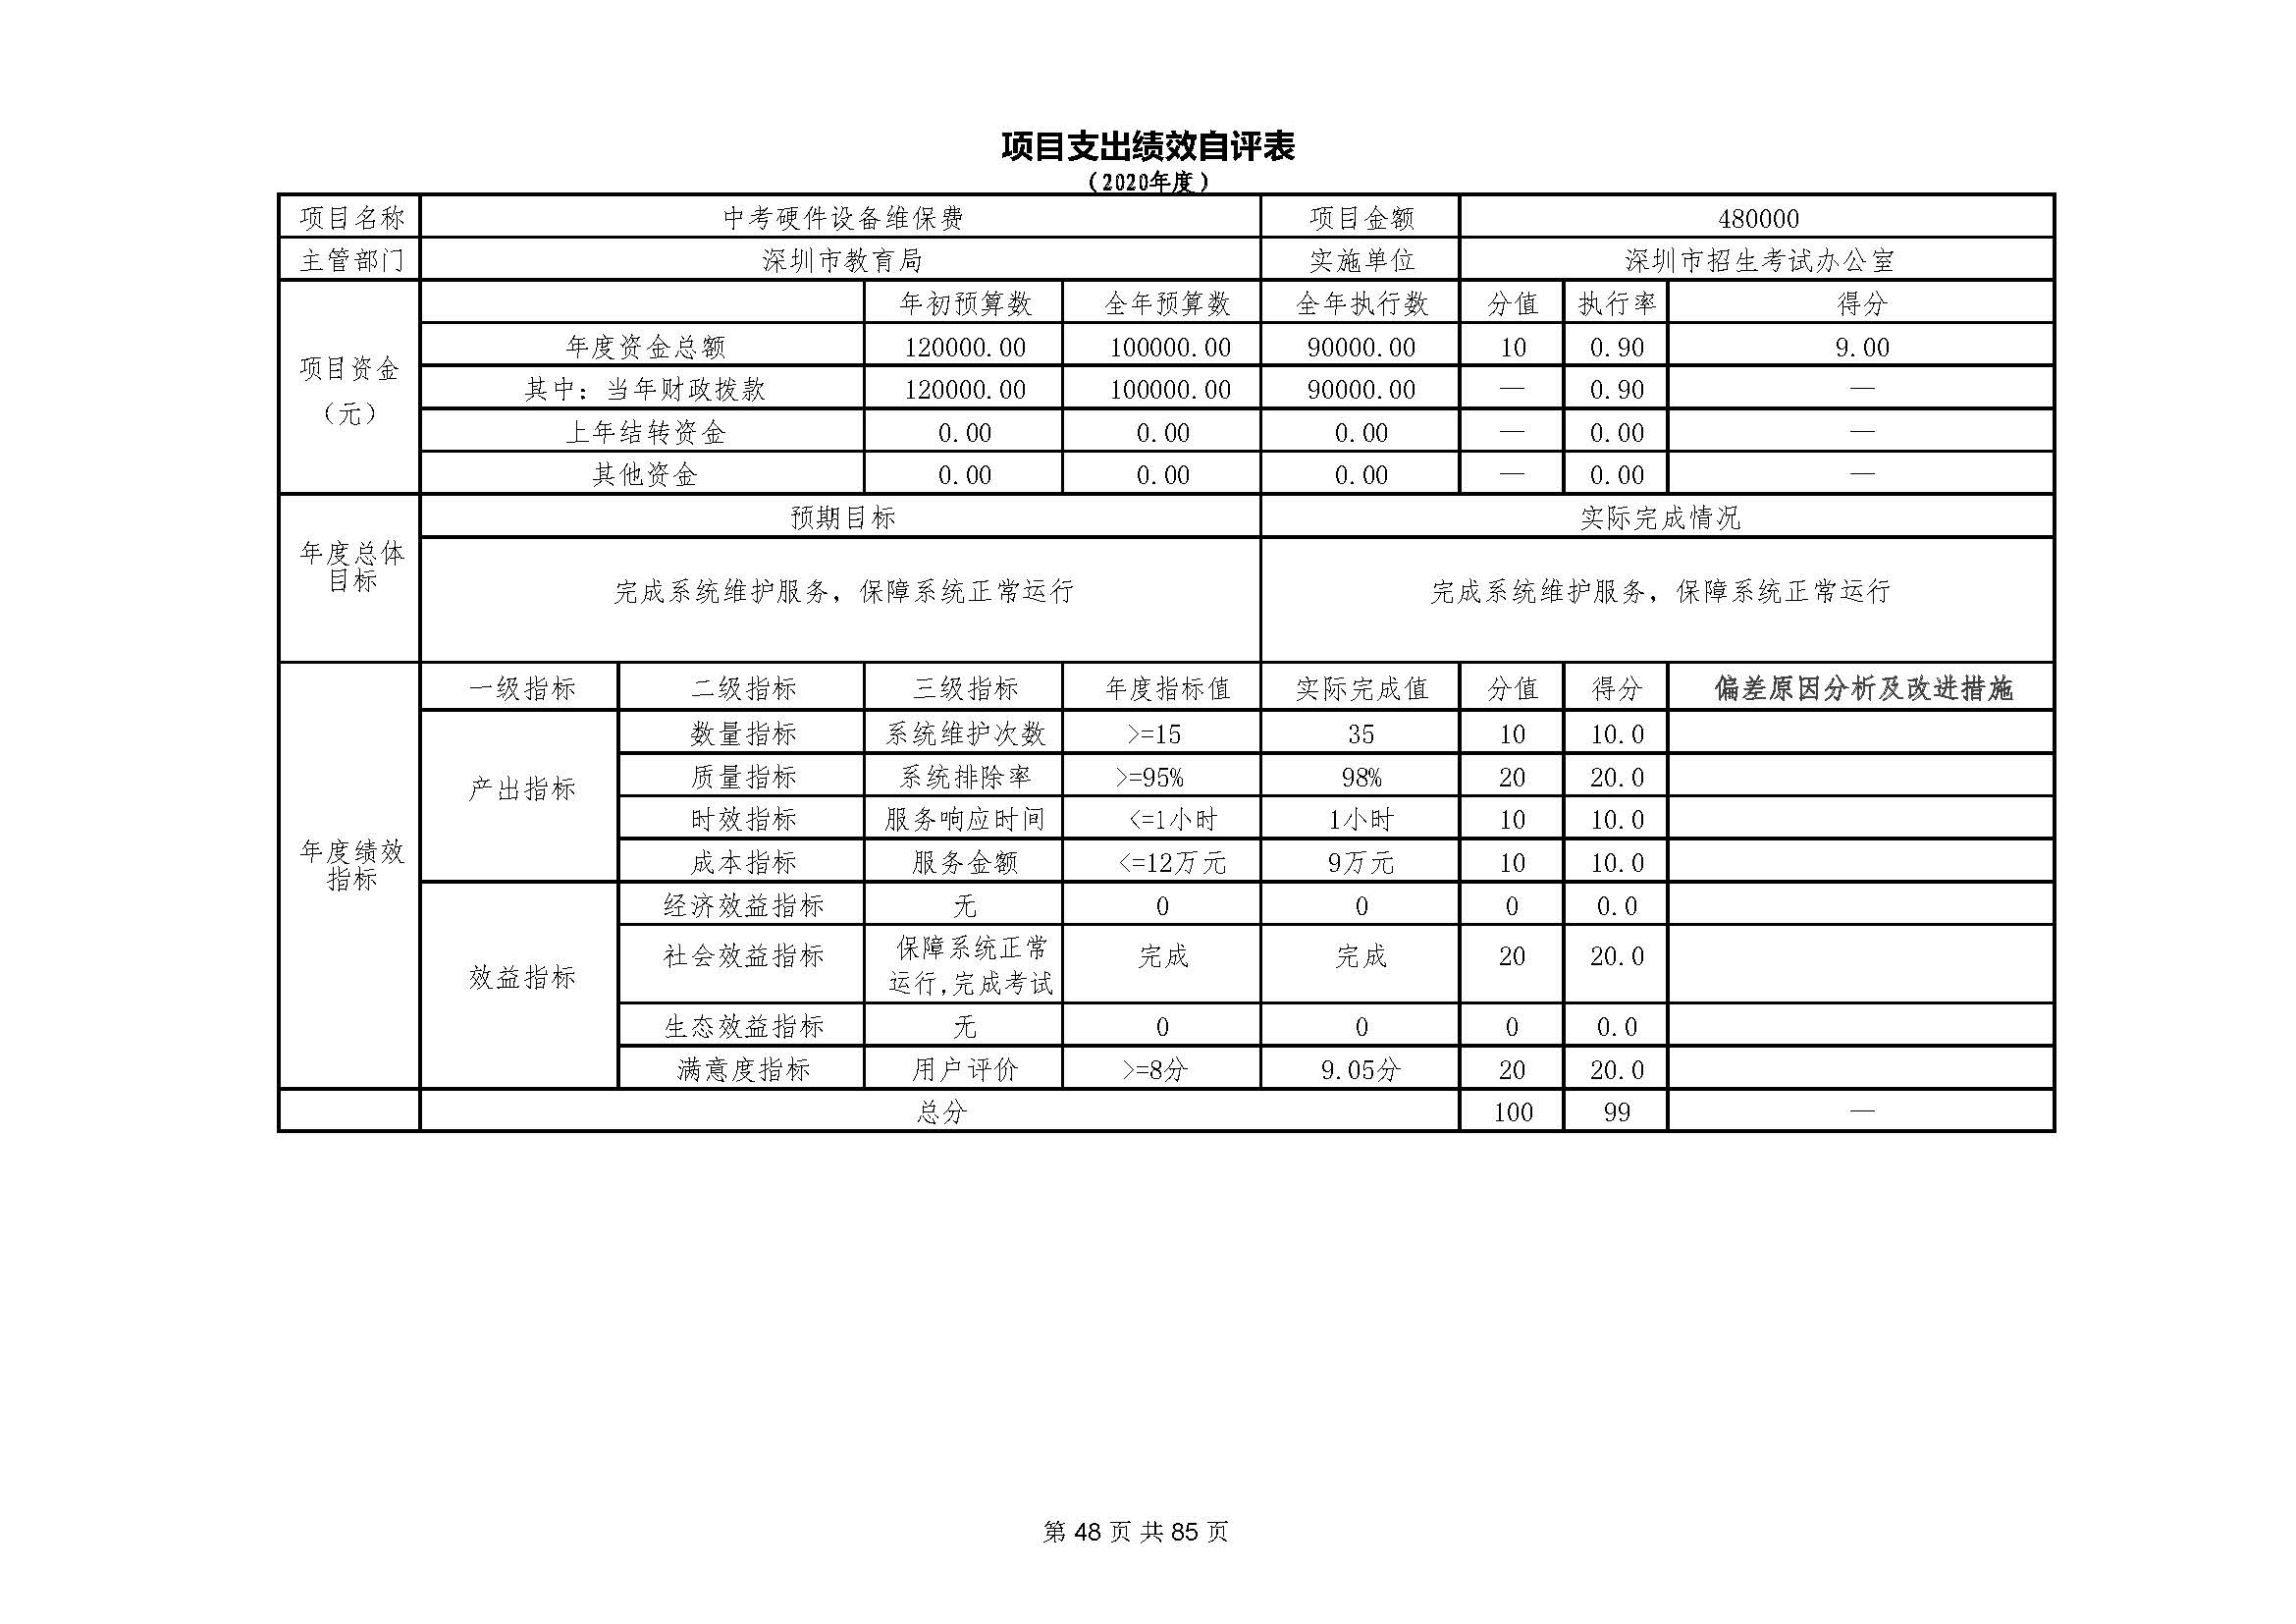 深圳市招生考试办公室2020年度部门决算_页面_49.jpg